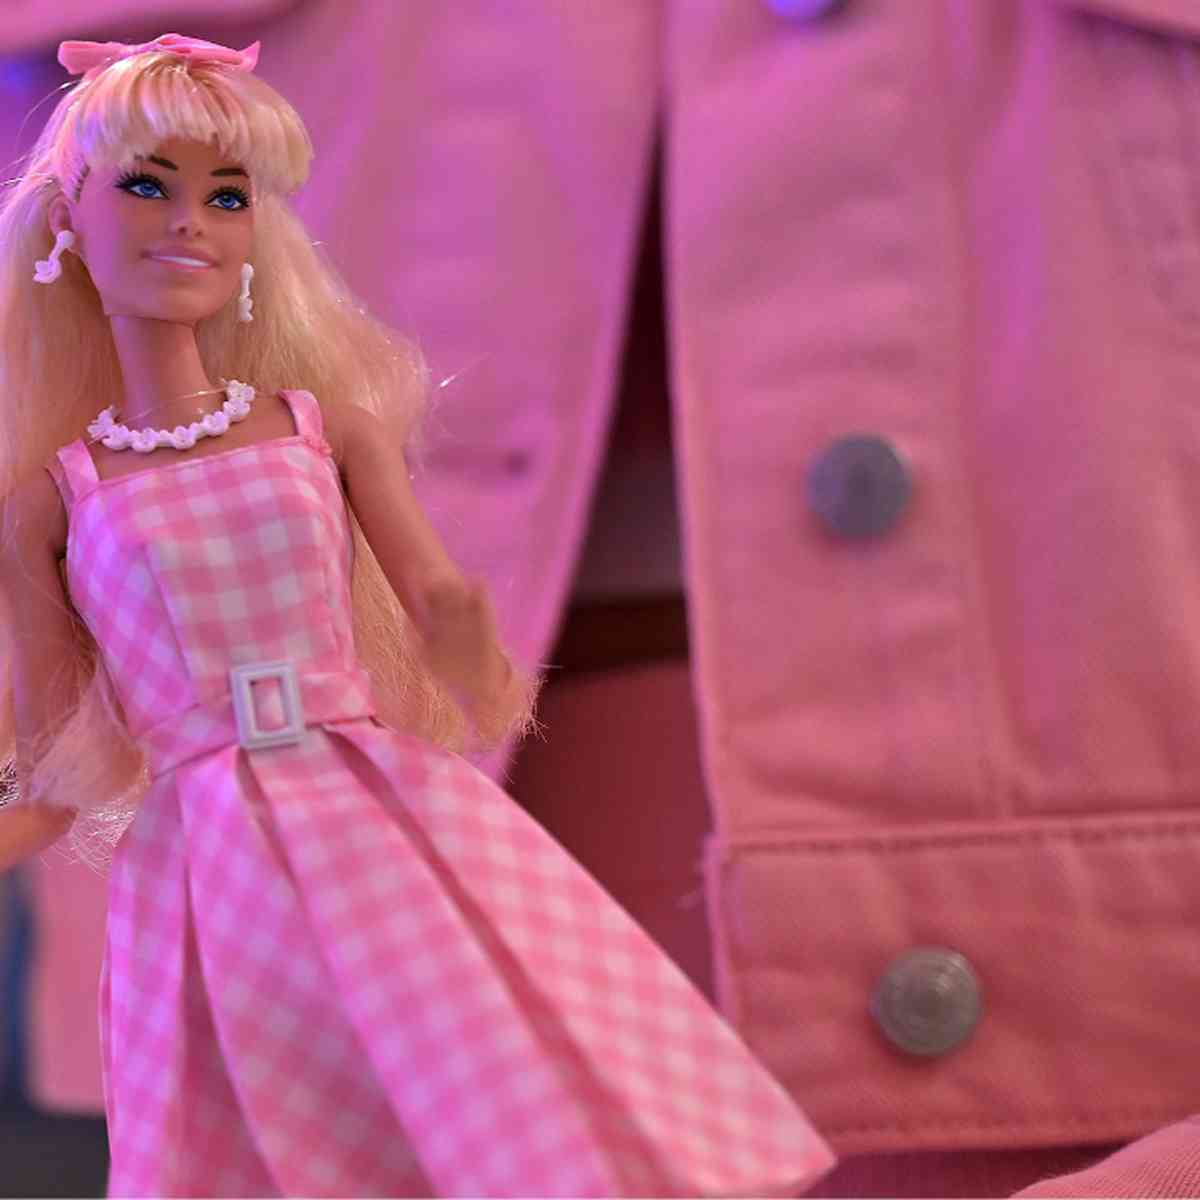 Jogos de Barbie Gravida - nJogos